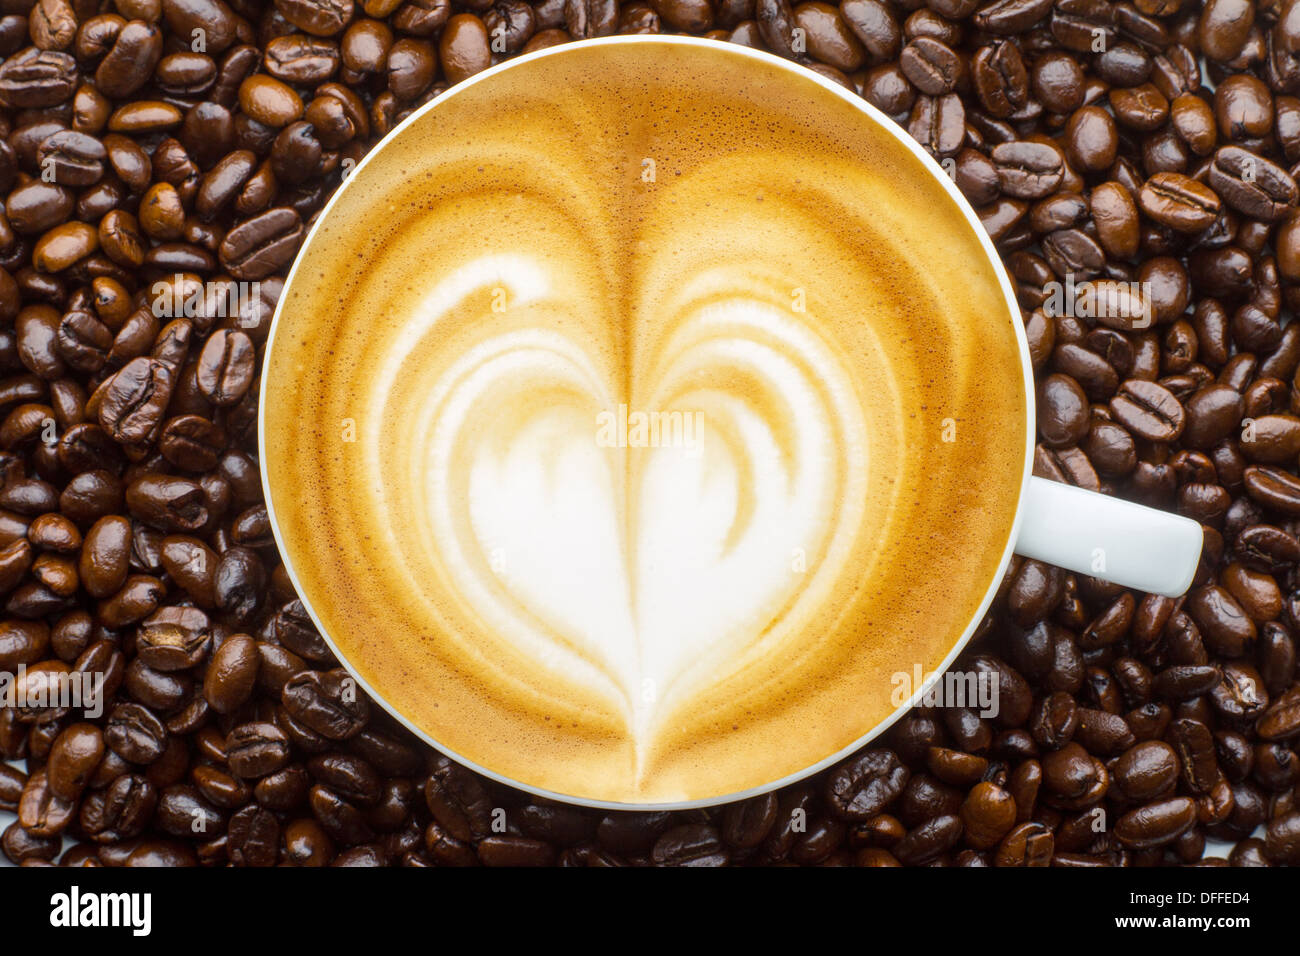 Le latte art, dans les fèves de café café contexte Banque D'Images